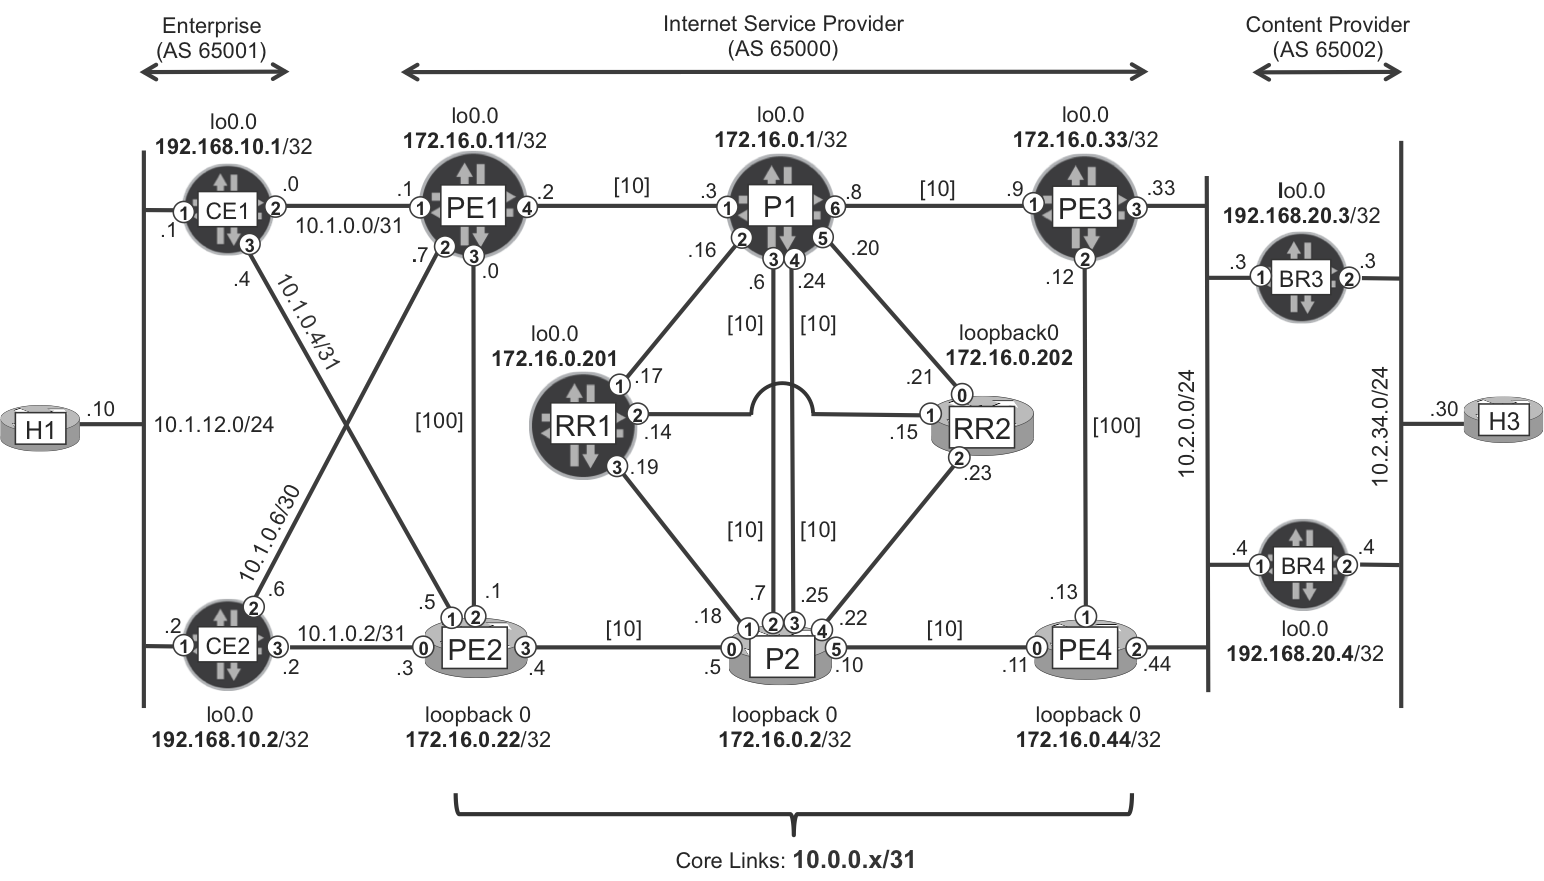 Basic ISP topology